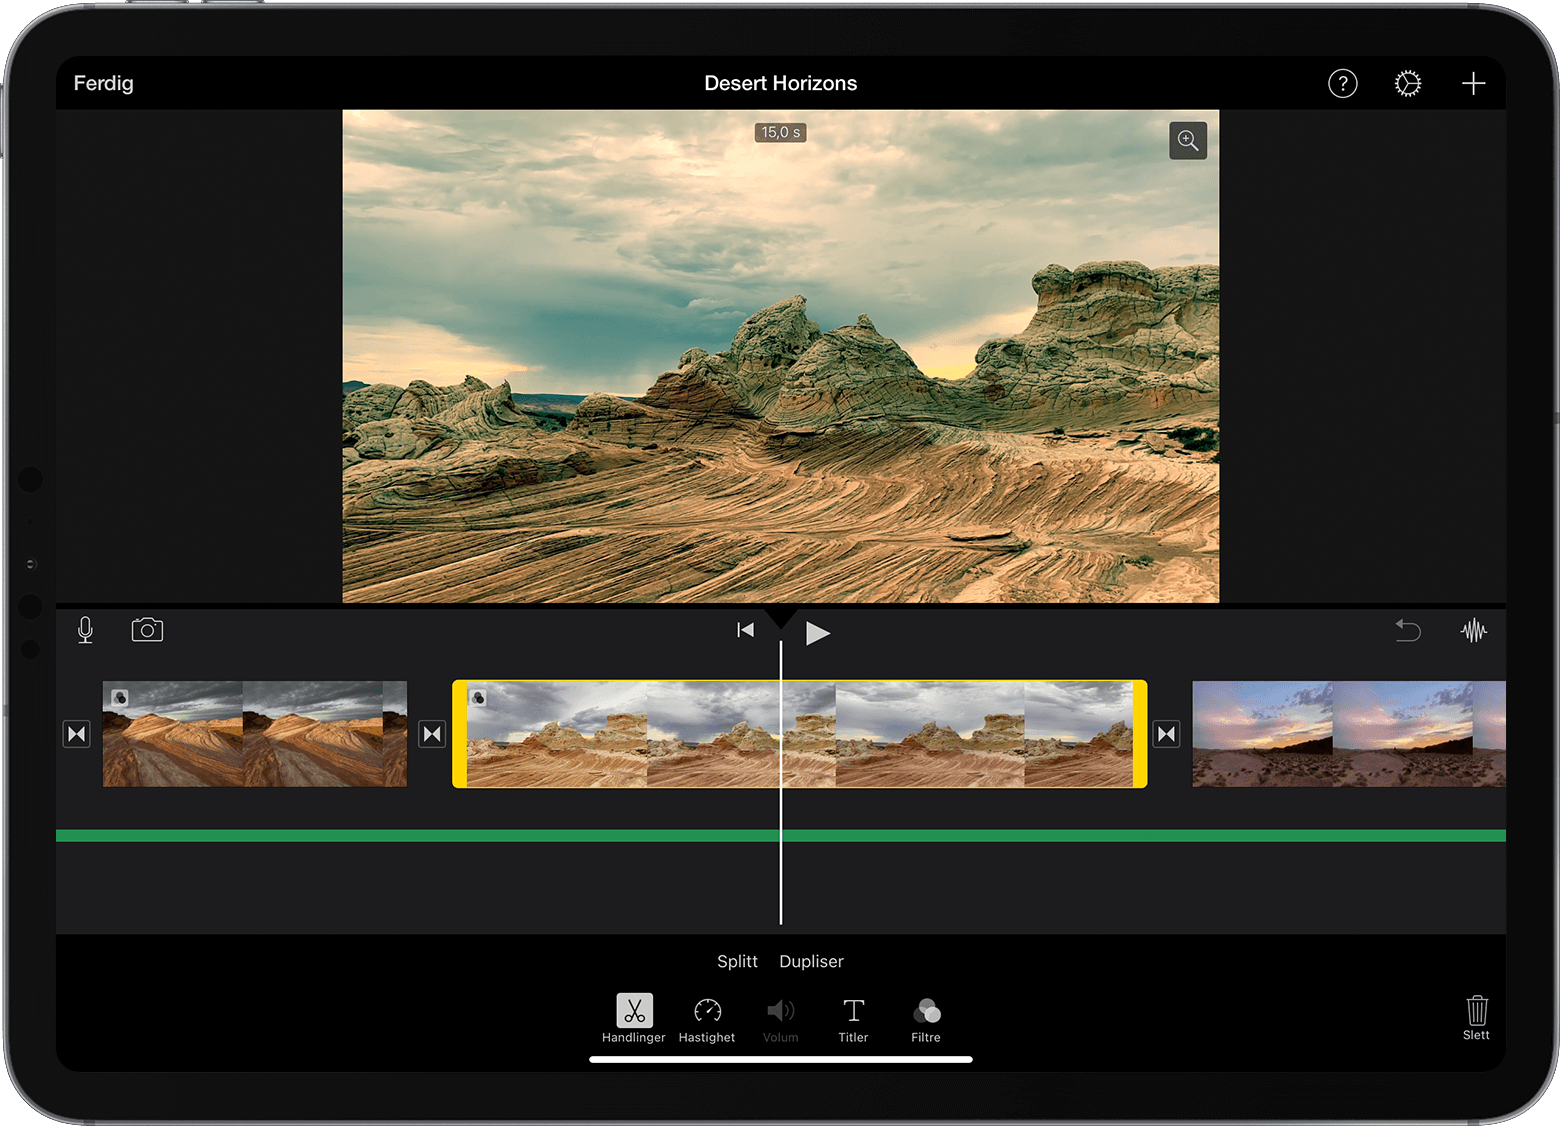 Et iMovie-prosjekt på iPad er åpent med et videoklipp valgt i tidslinjen